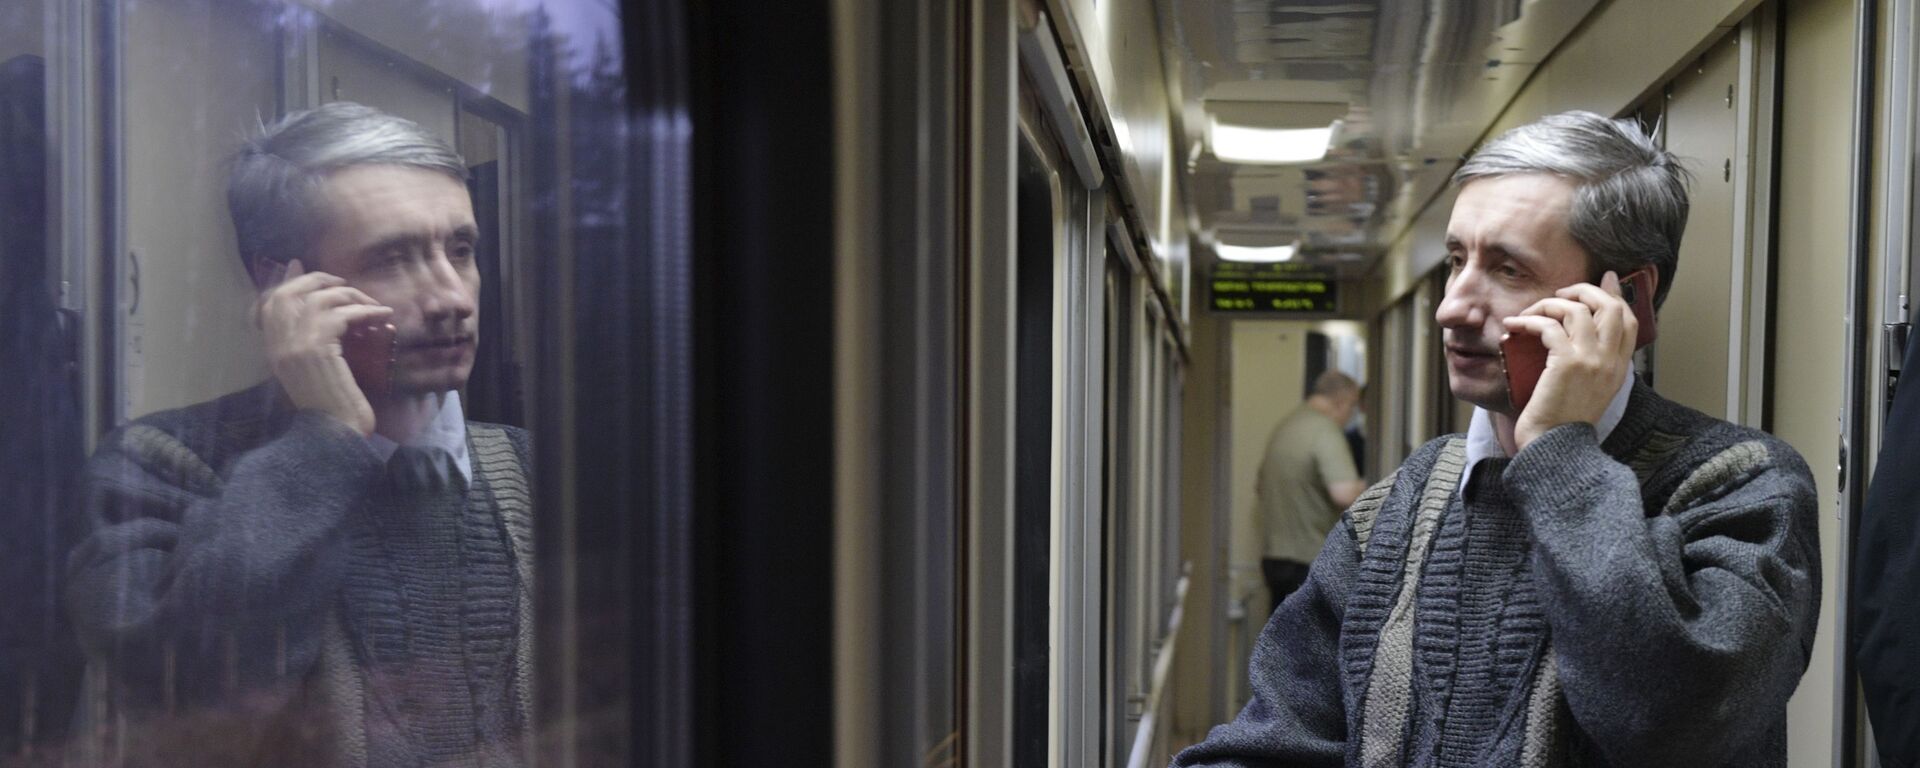 Пассажир разговаривает по телефону в поезде - Sputnik Беларусь, 1920, 03.02.2021